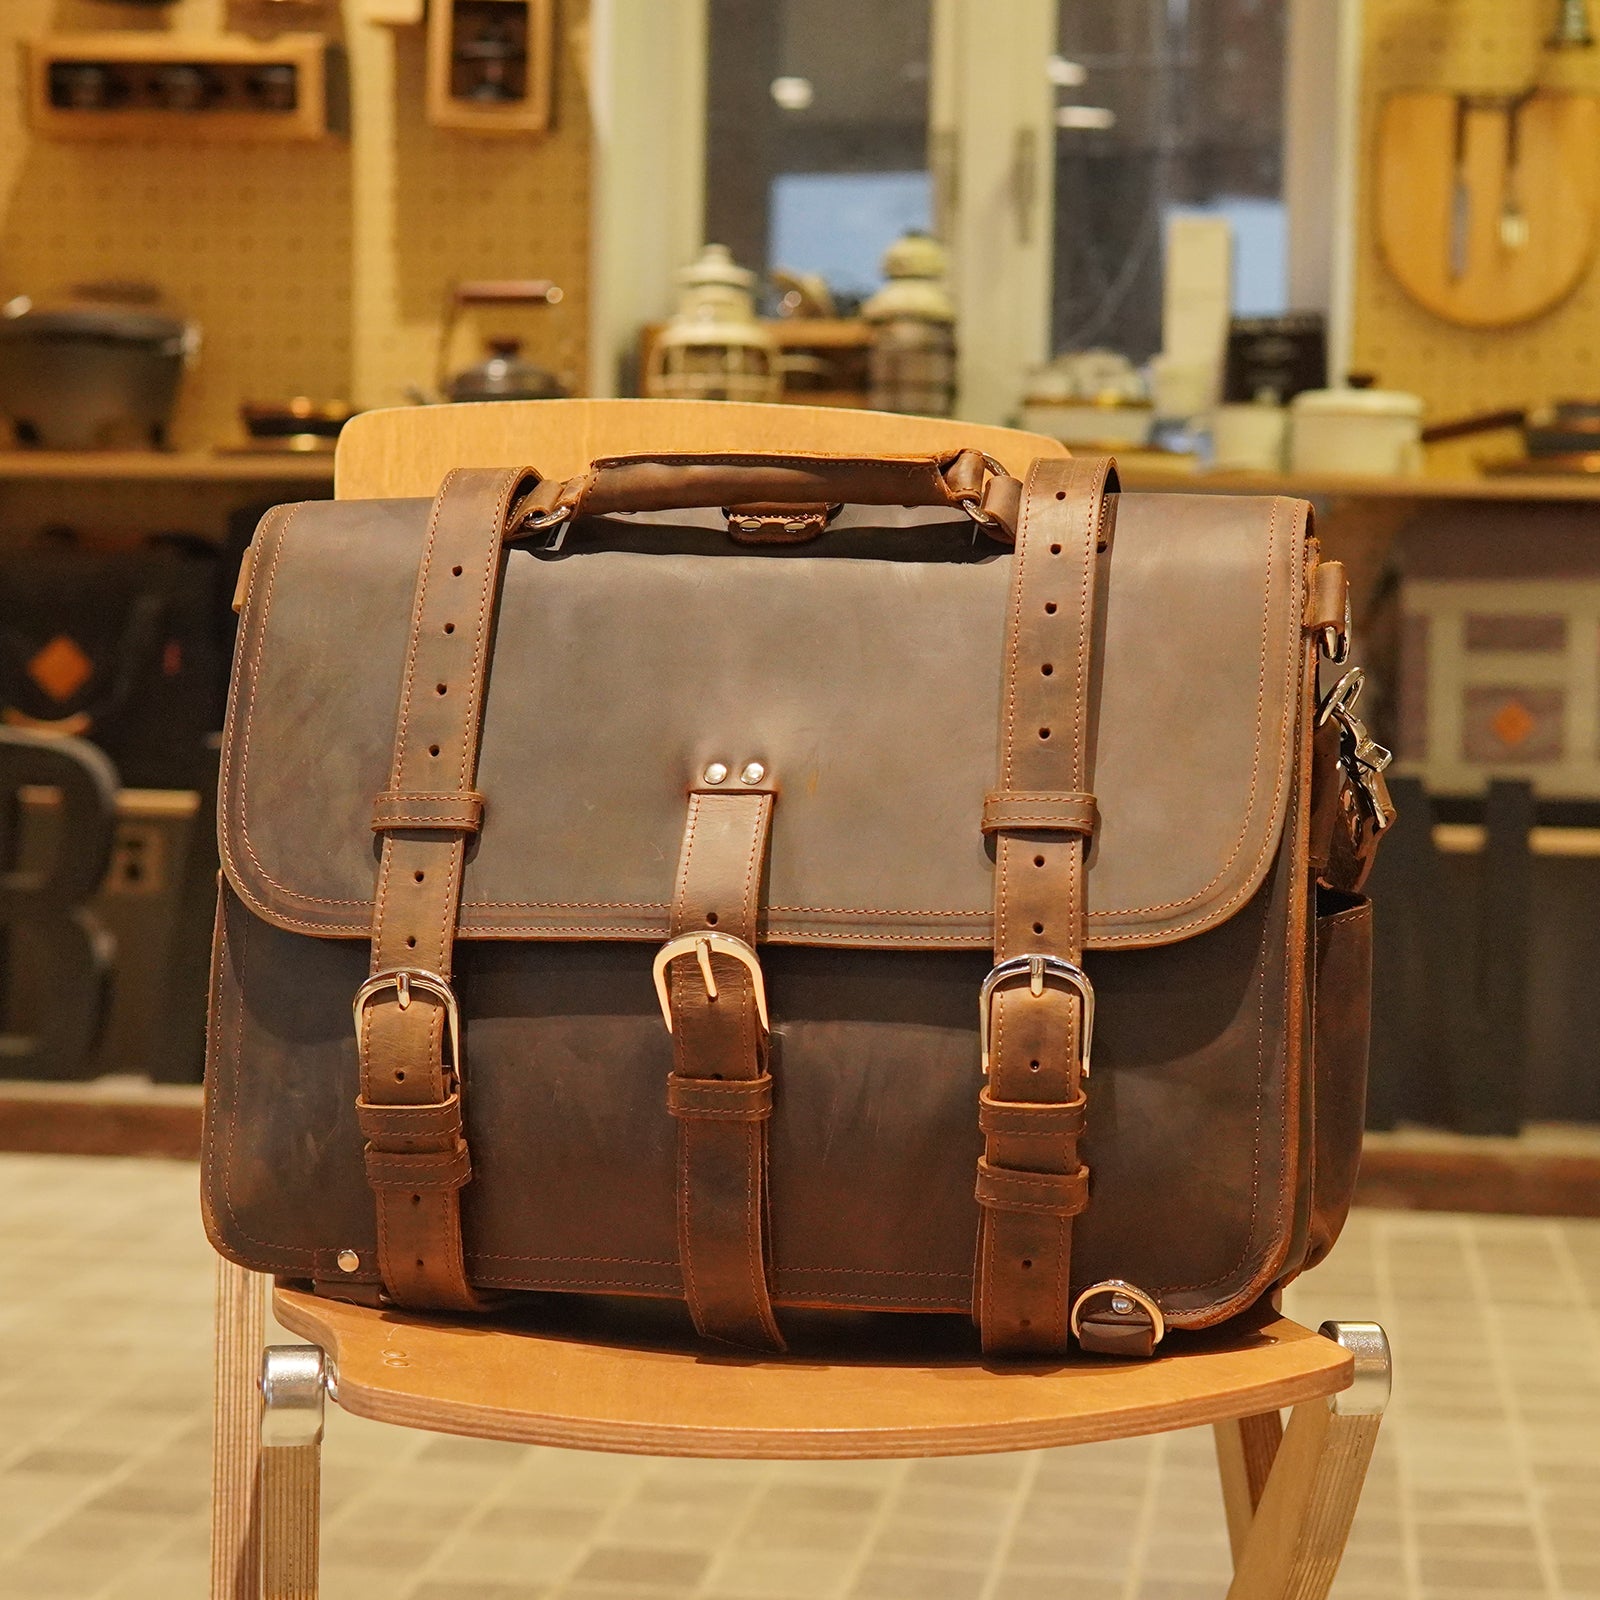 Polare 16" Full Grain Leather Briefcase Shoulder Messenger Bag (Brown)